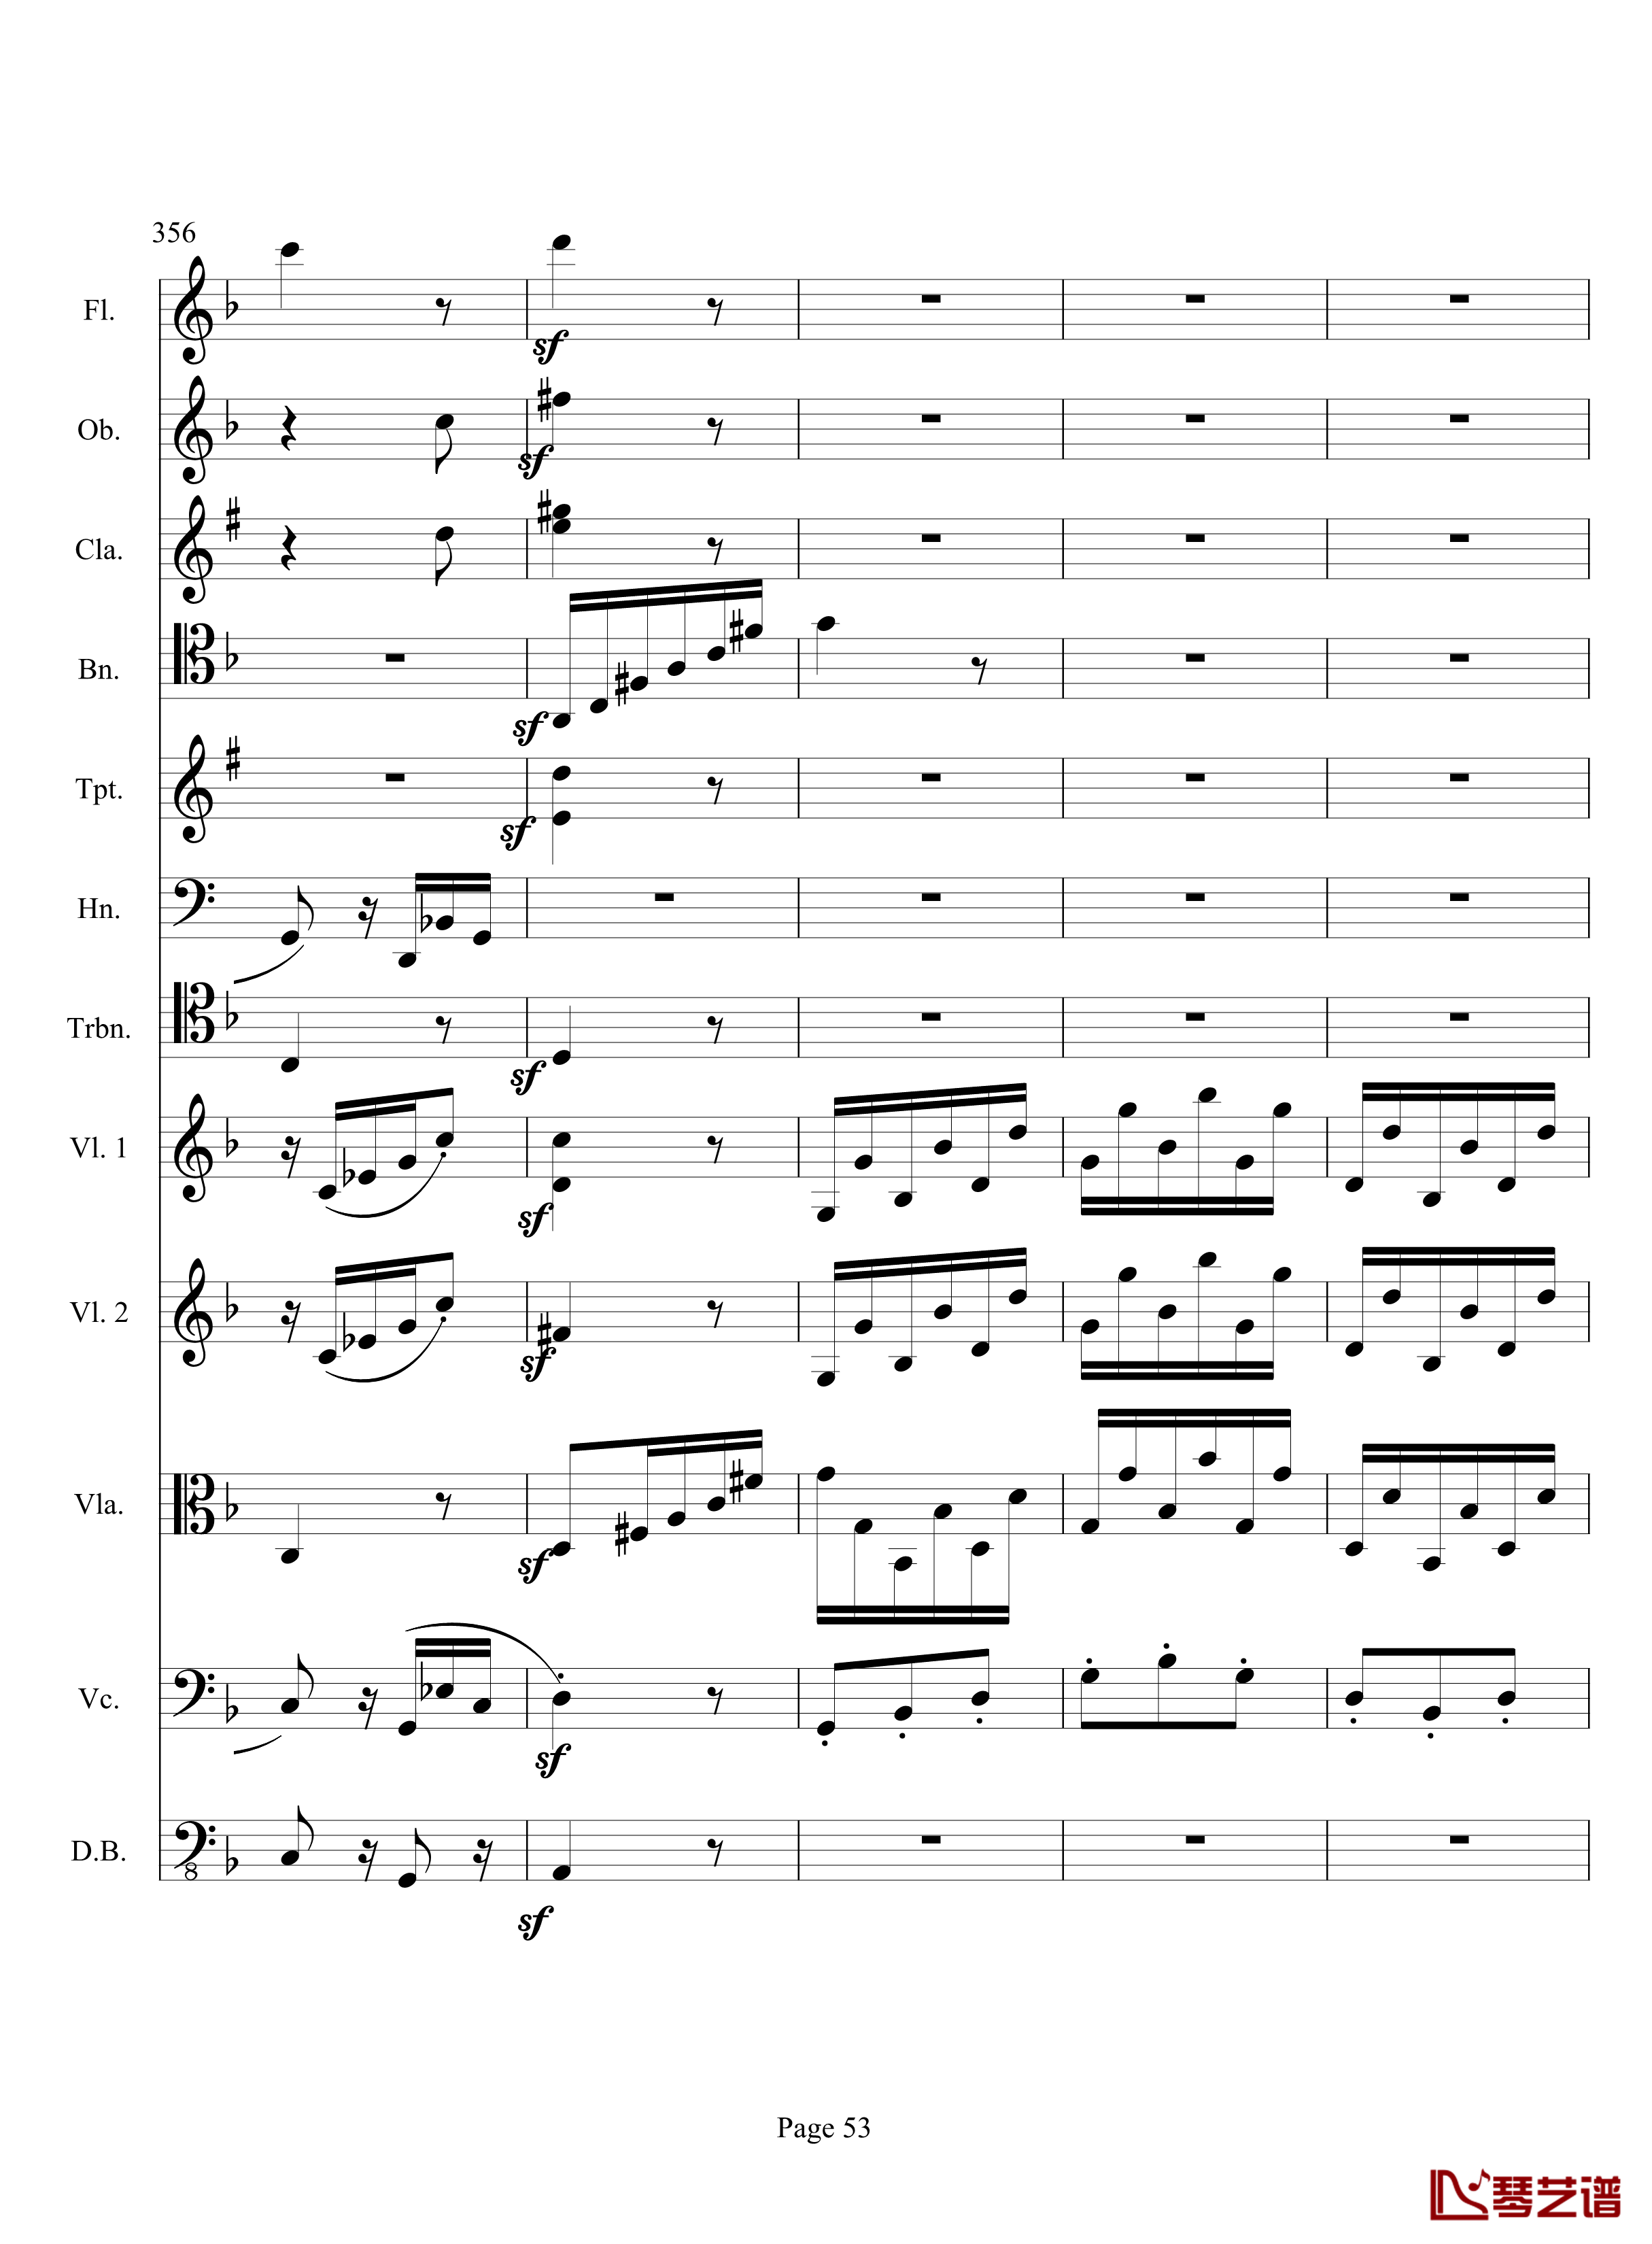 奏鸣曲之交响钢琴谱-第17首-Ⅲ-贝多芬-beethoven53